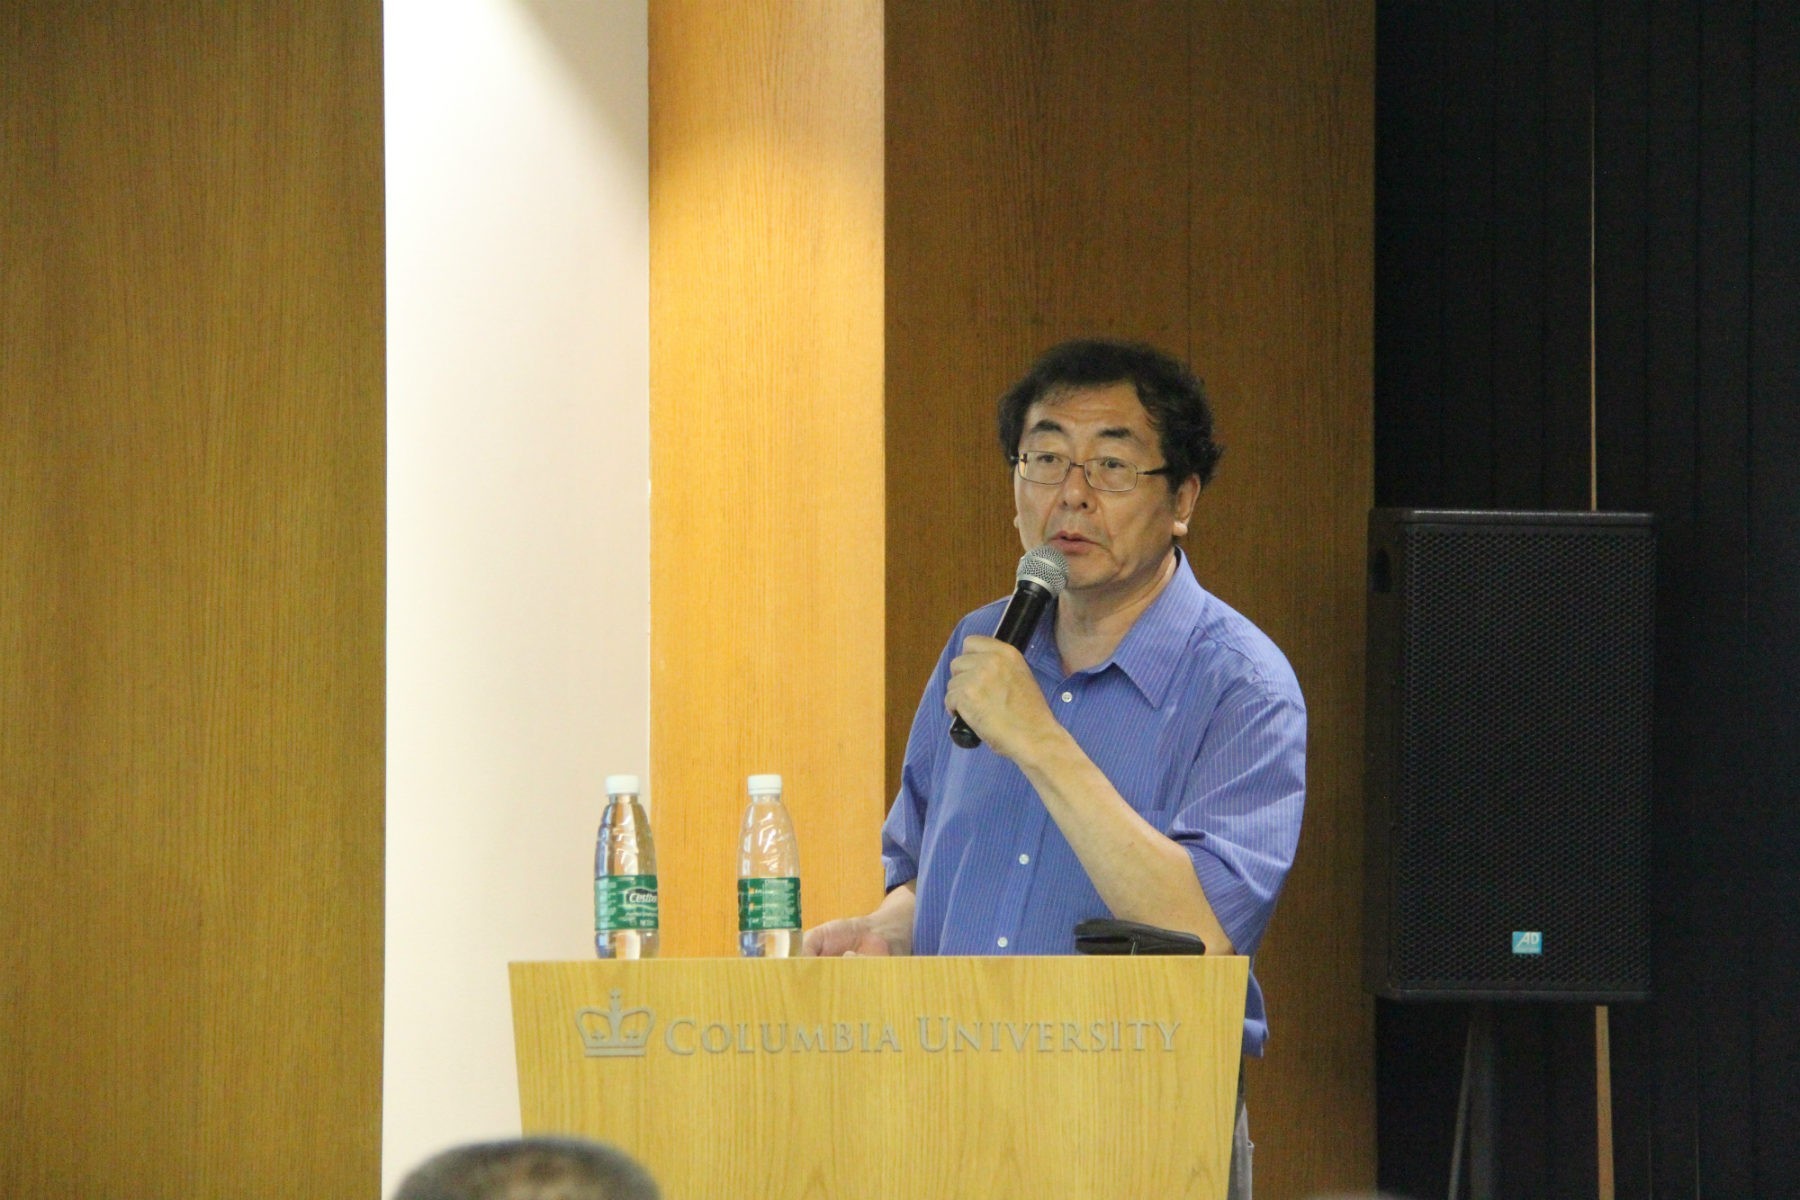 Professor Chen Jingguang